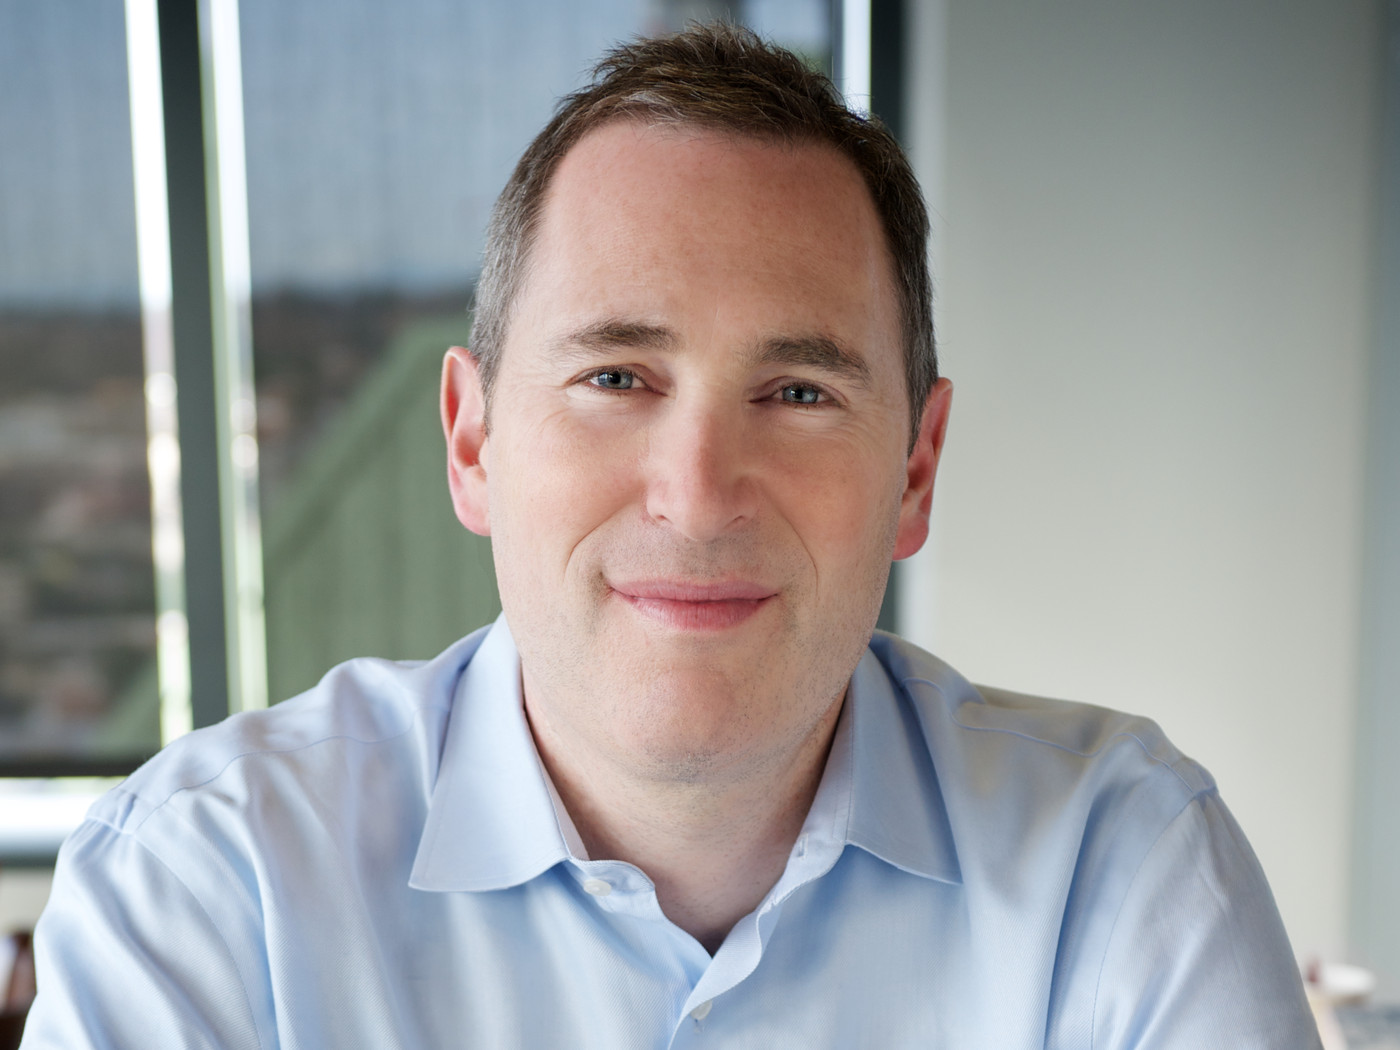 Andy Jassy, Amazon's new CEO